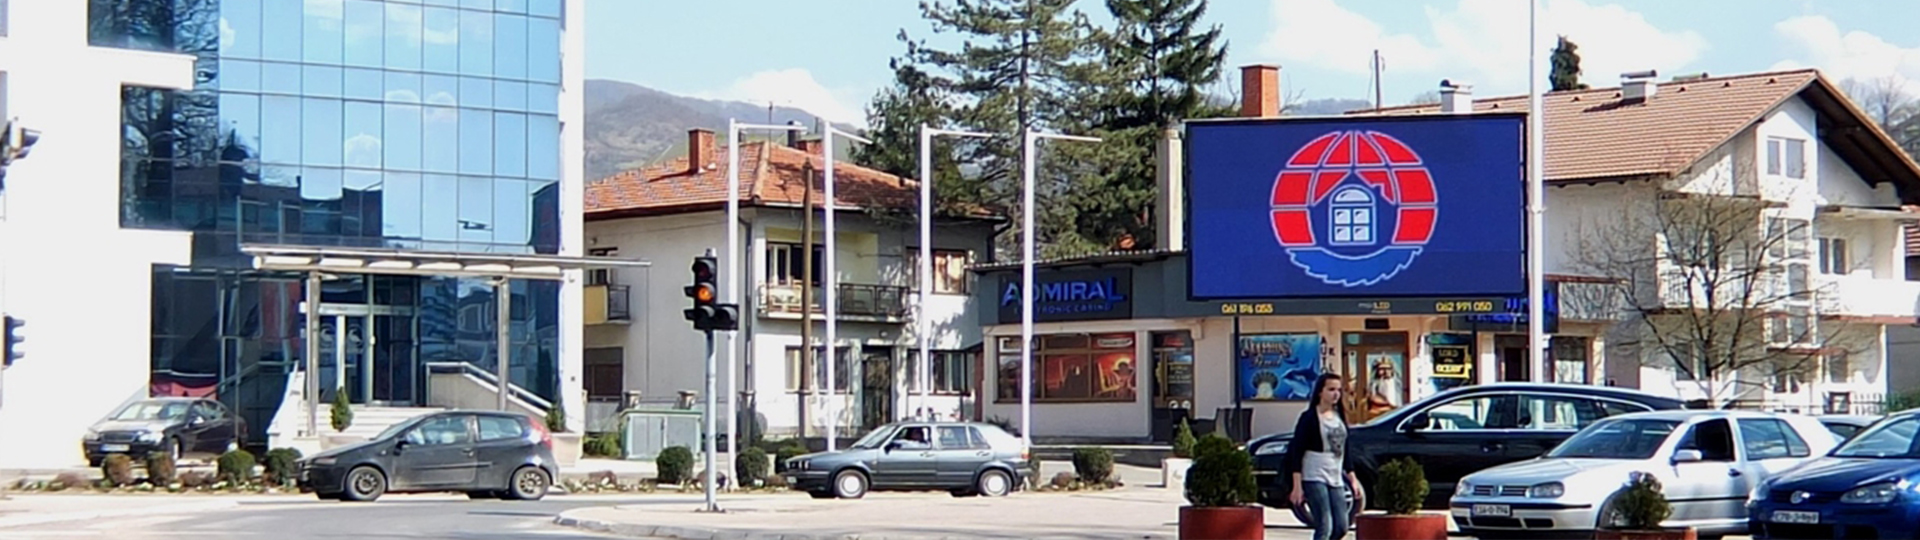 Glavna semaforska raskrsnica na ulazu u grad Srebrenik. Magistralni put Tuzla - Orašje odiše kvalitetnim prometom svaki dan. Reklama je upečatljiva sa velike udaljenosti zbog direktnog pogleda raskrsnice u vaš reklamni sadržaj.